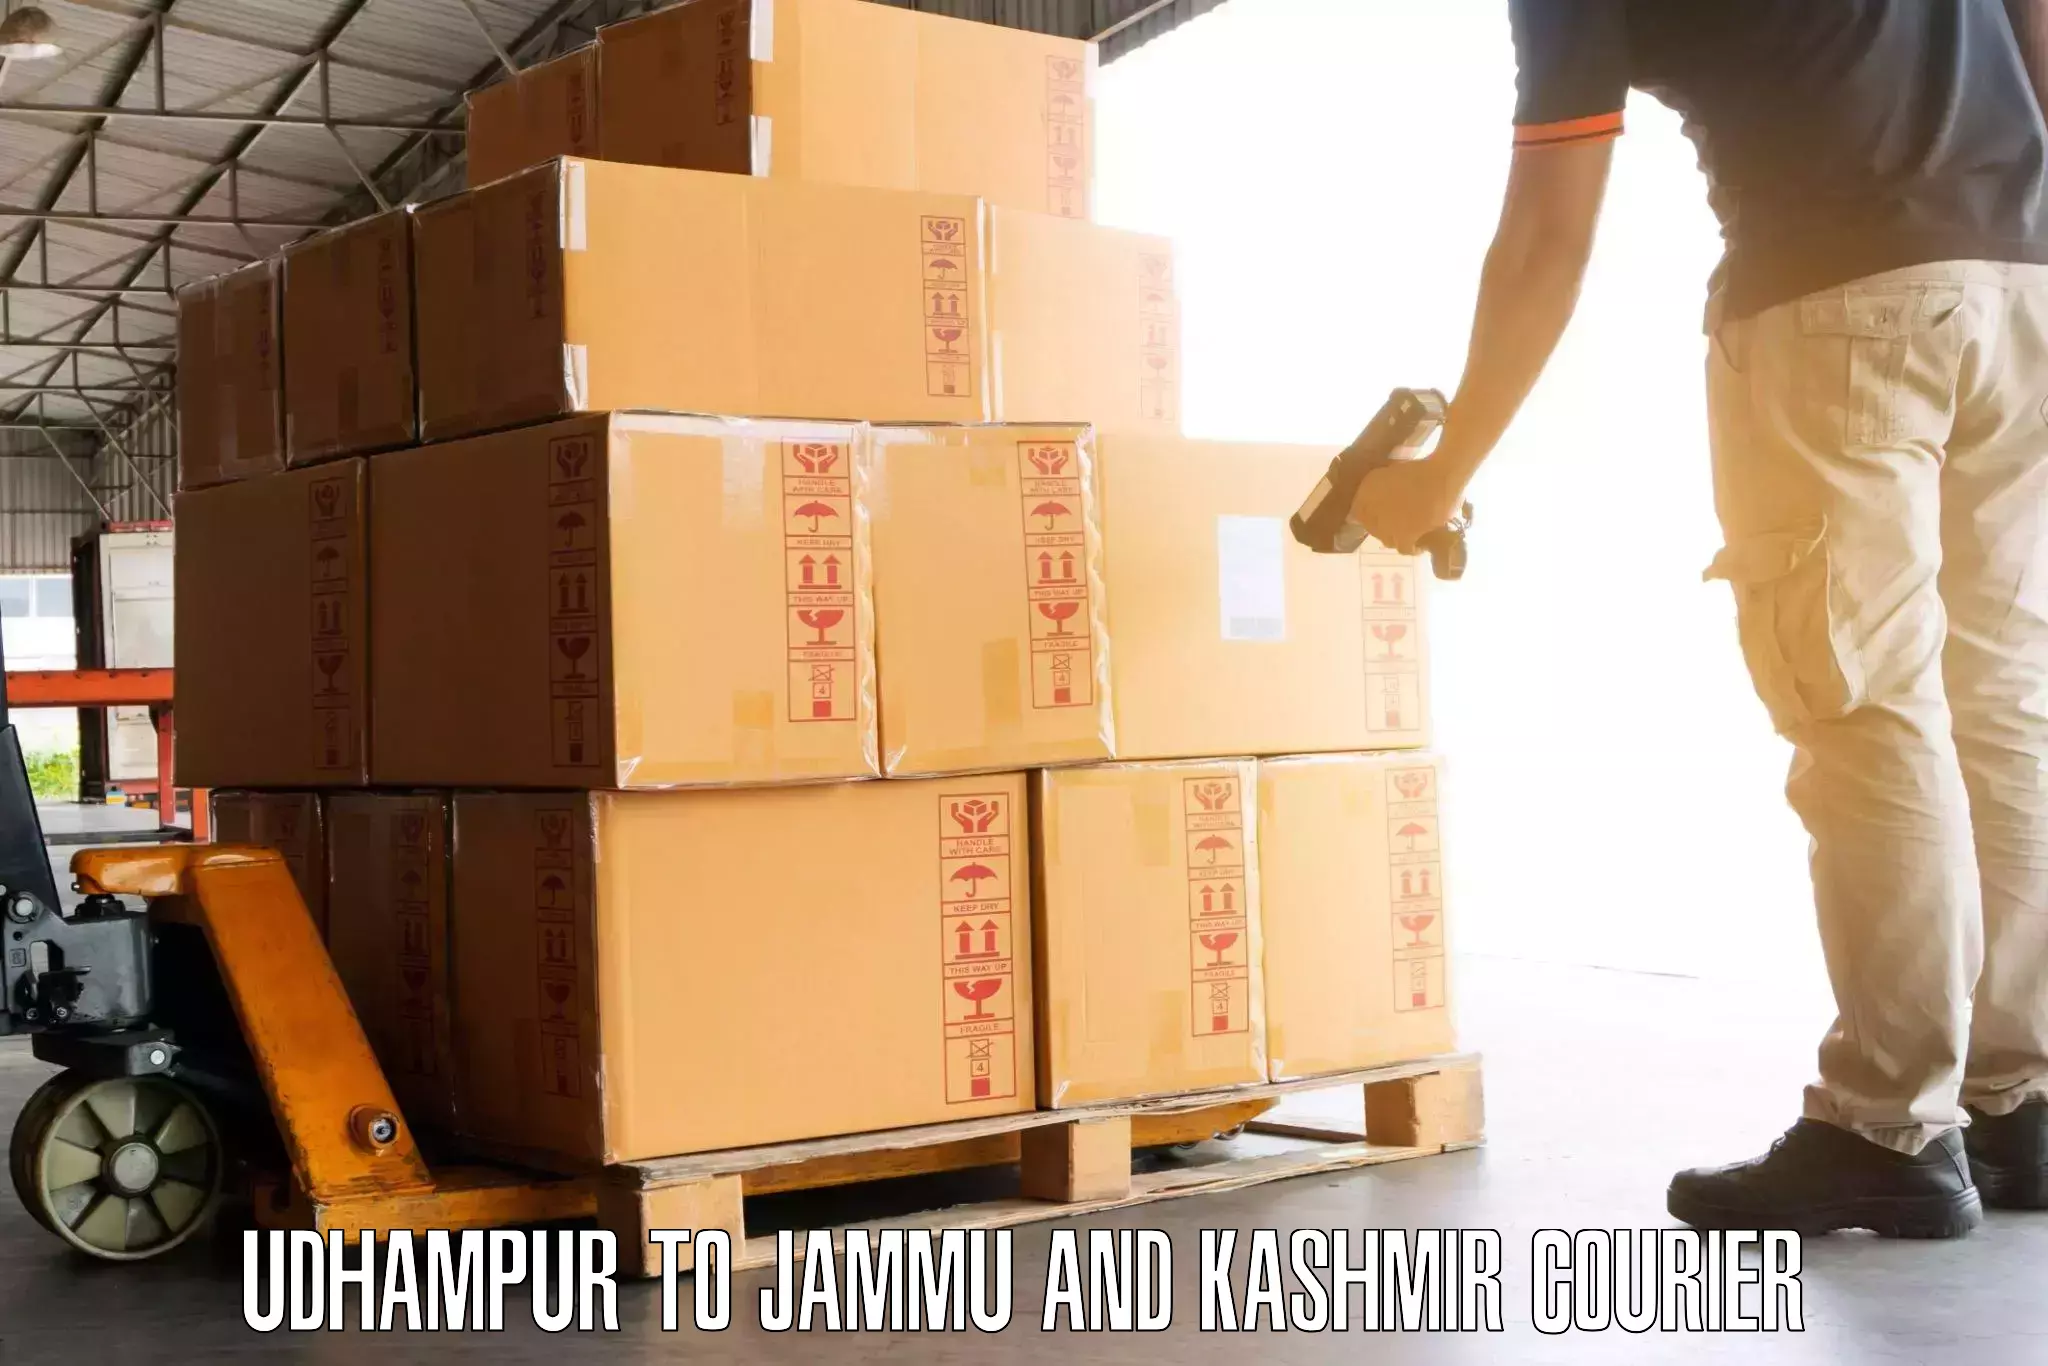 Luggage delivery network Udhampur to Srinagar Kashmir